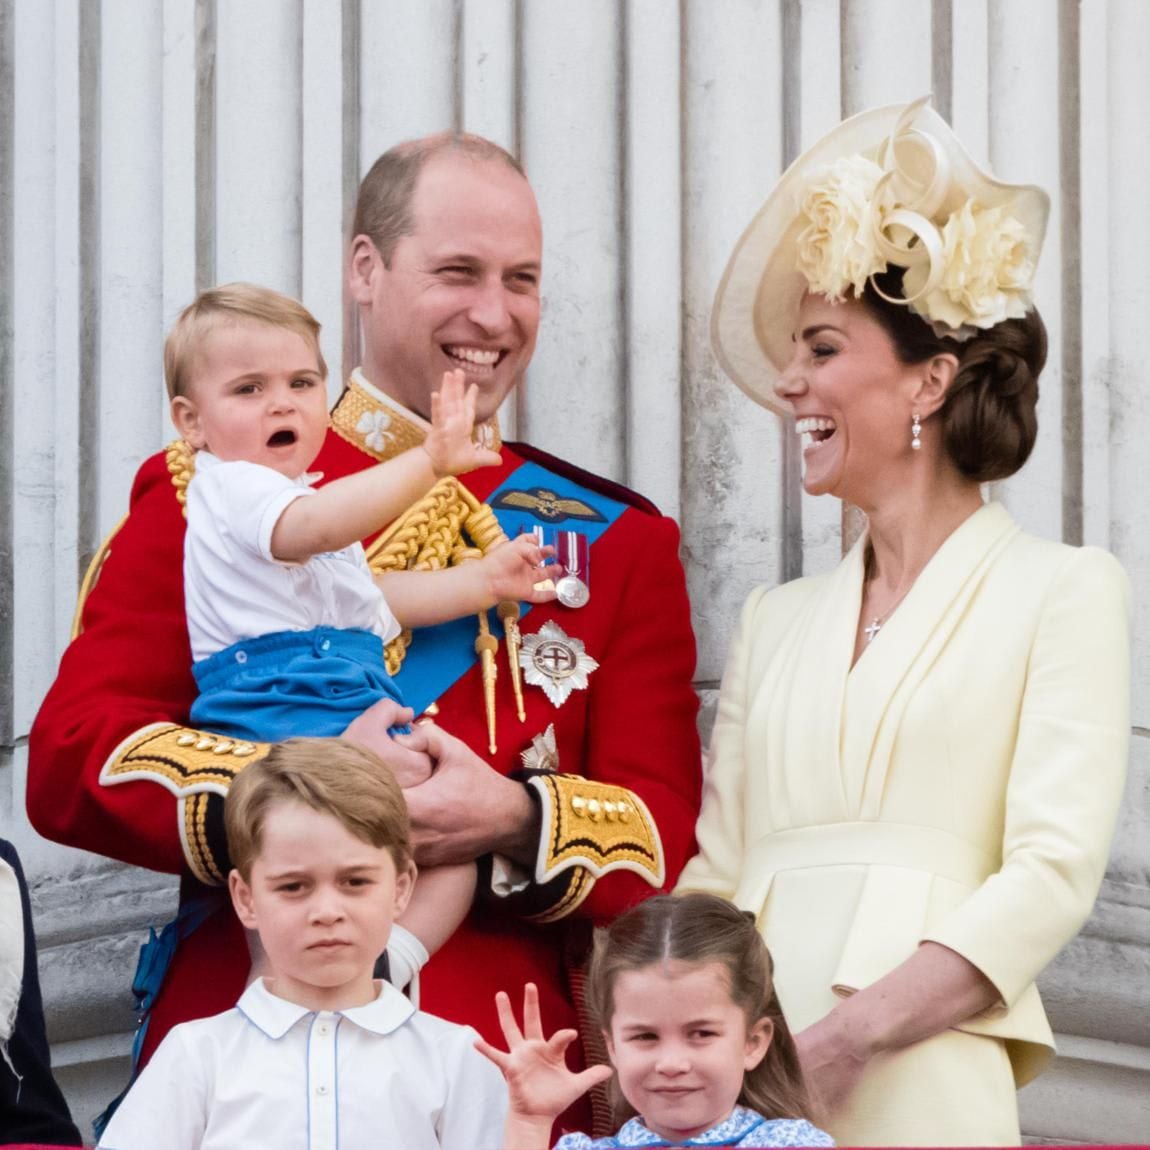 The Duke and Duchess of Cambridge share three children